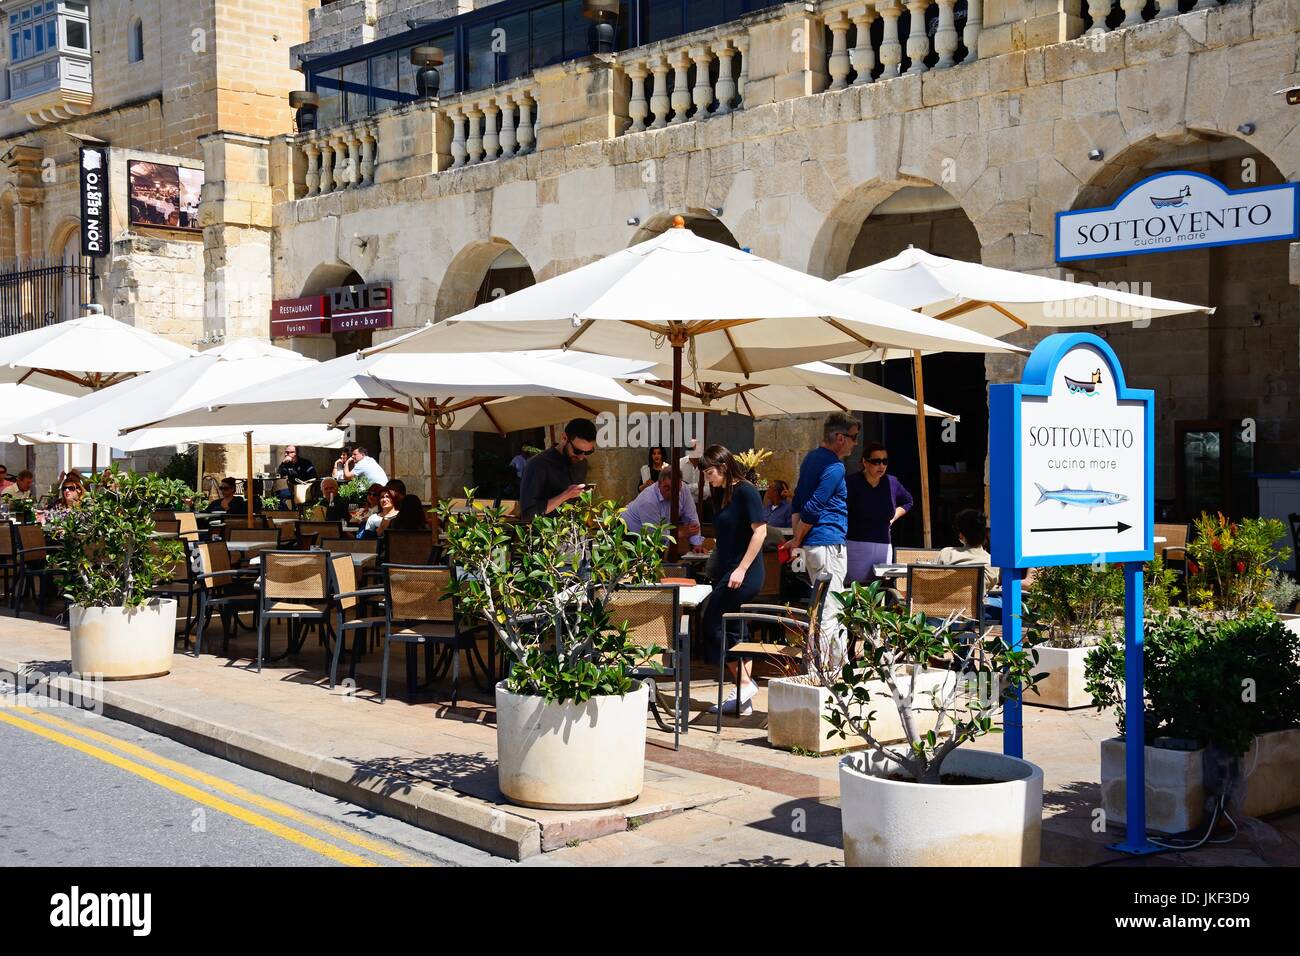 Les touristes à la détente de la chaussée Sottovento cafe le long du front de mer, Mdina, Malte, l'Europe. Banque D'Images